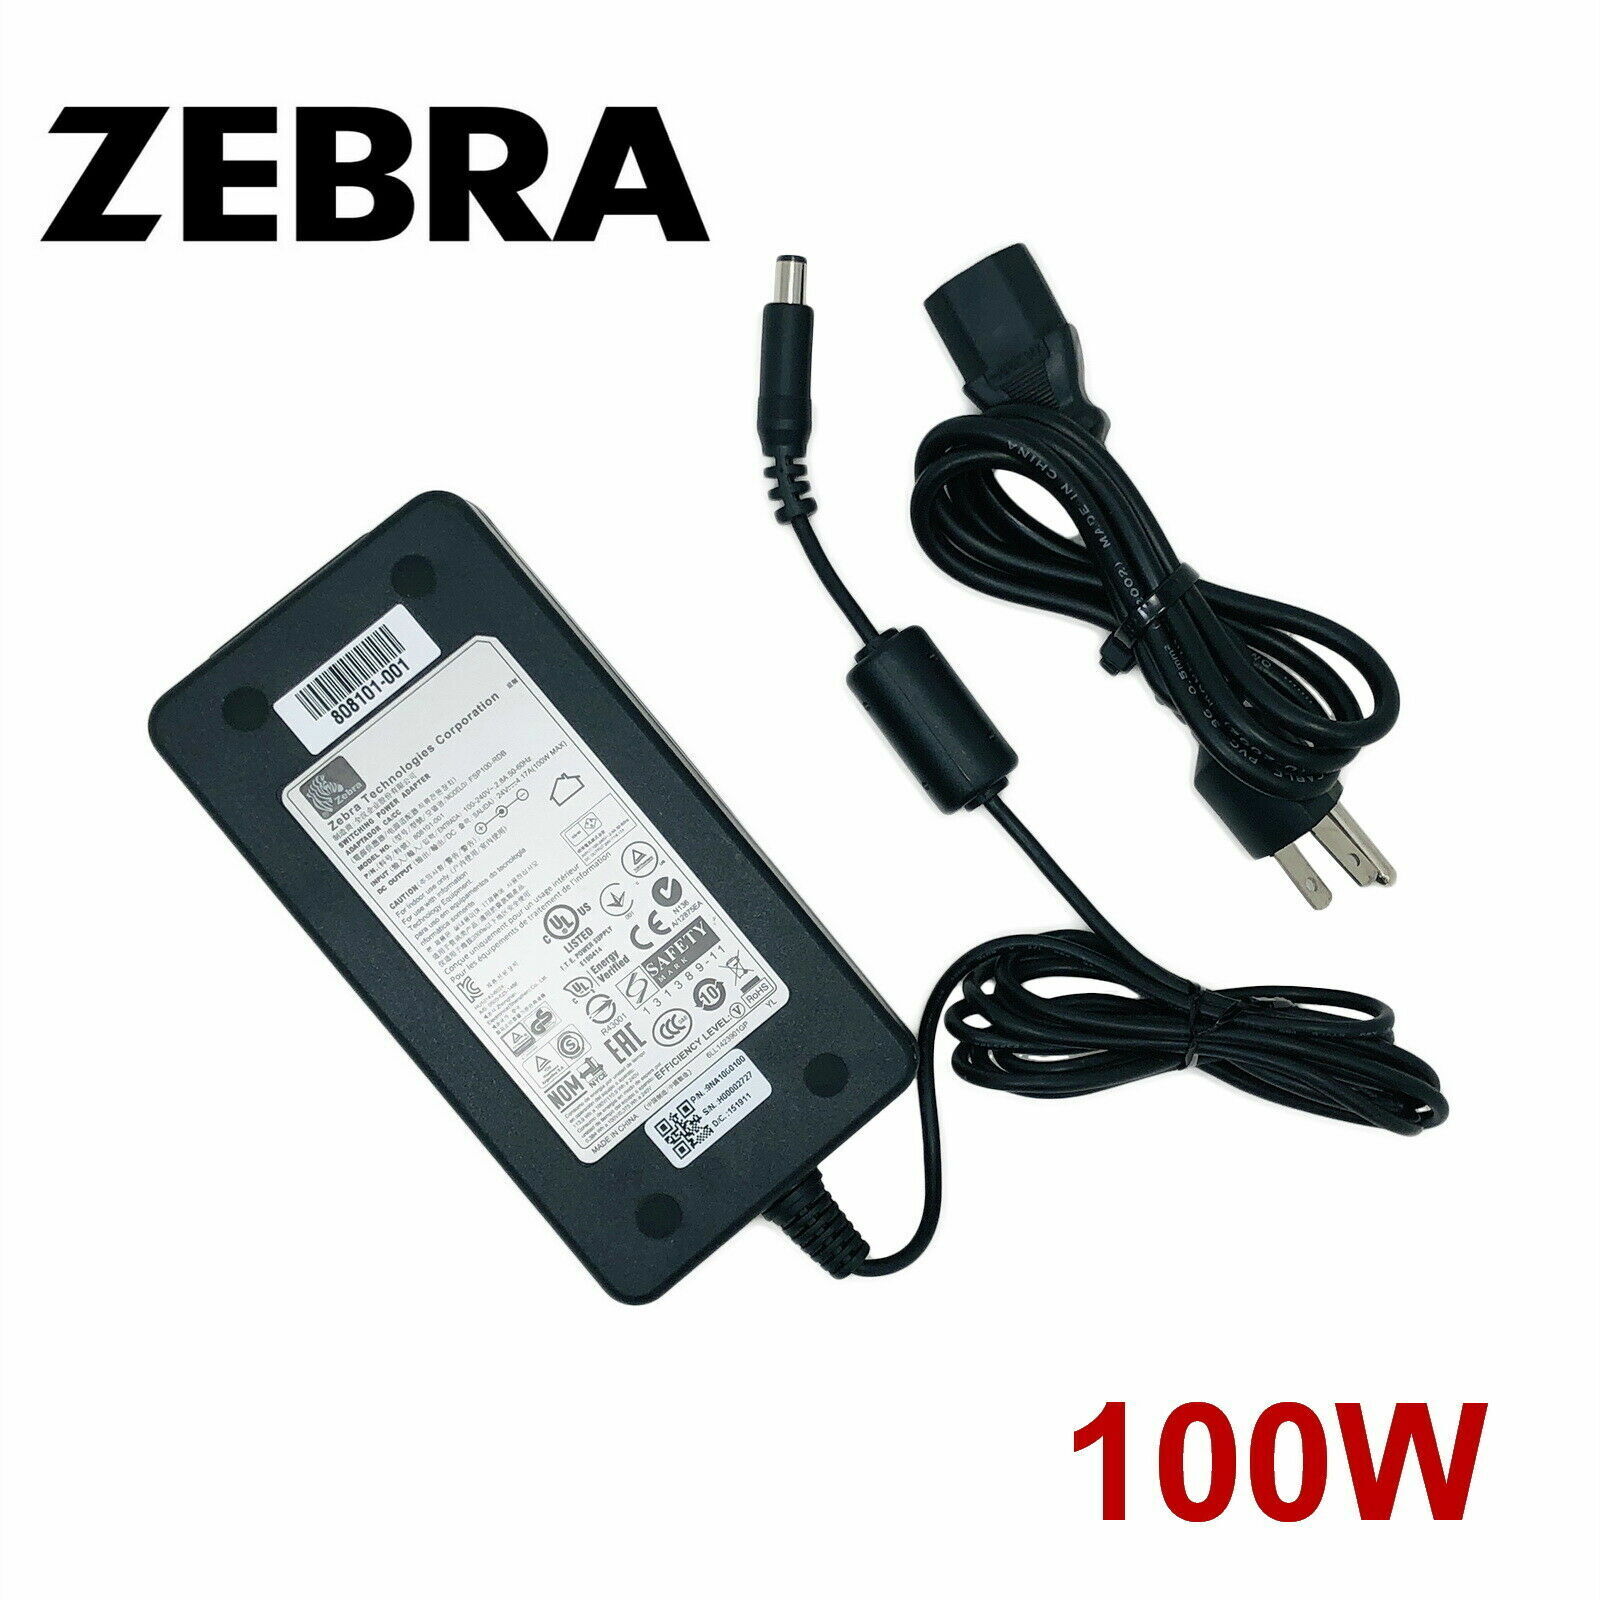 *Brand NEW*Original Zebra 24V 4.17A AC Adapter For GX420D GX420T GX430T Printer FSP100-RDB Power Sup - Click Image to Close